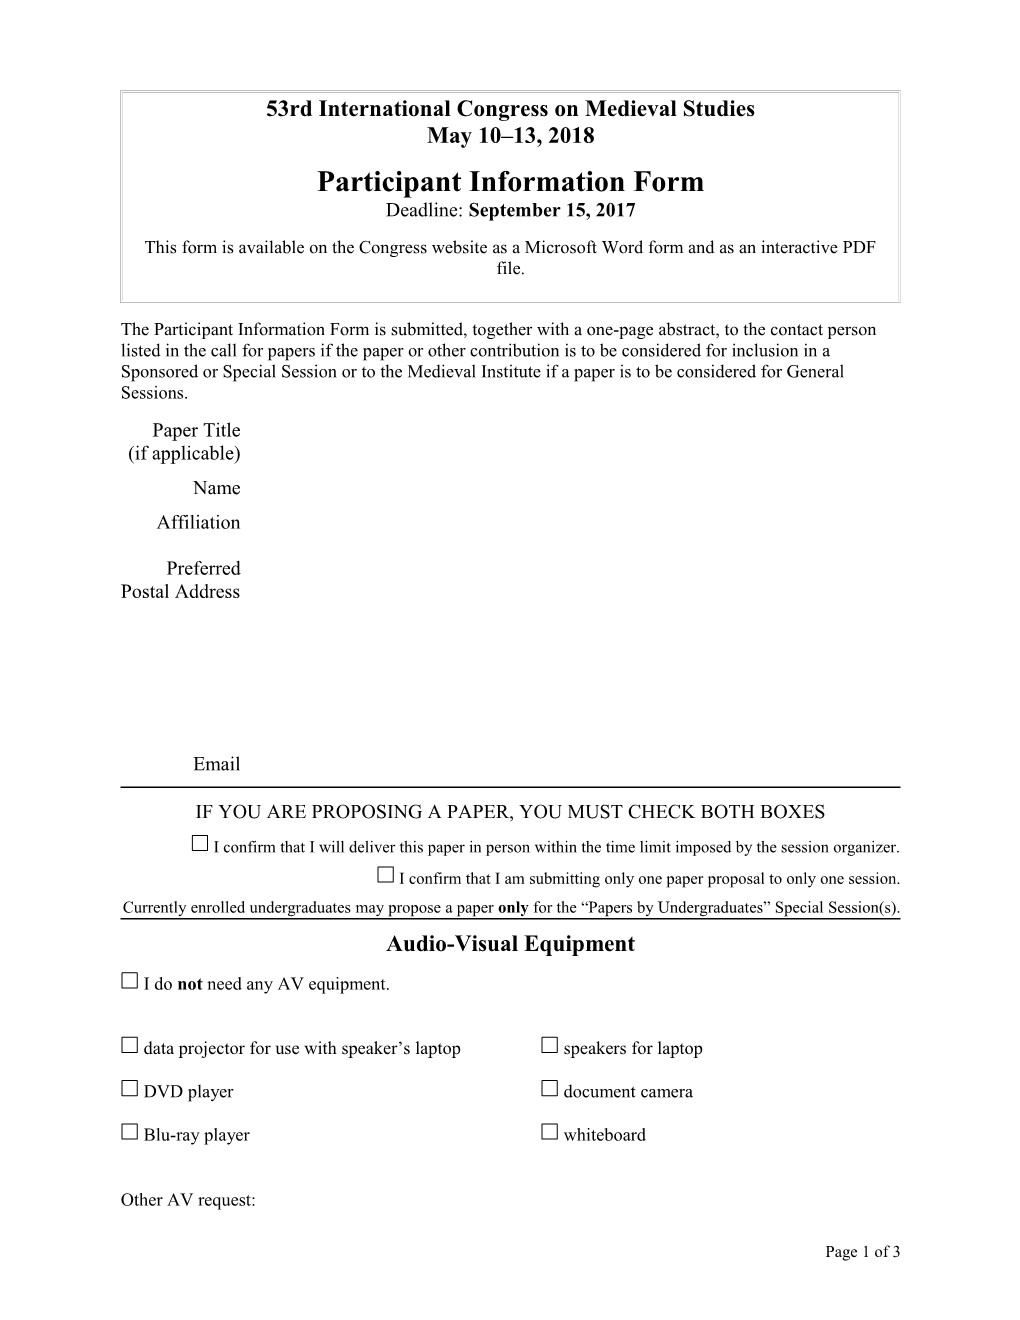 Participant Information Form